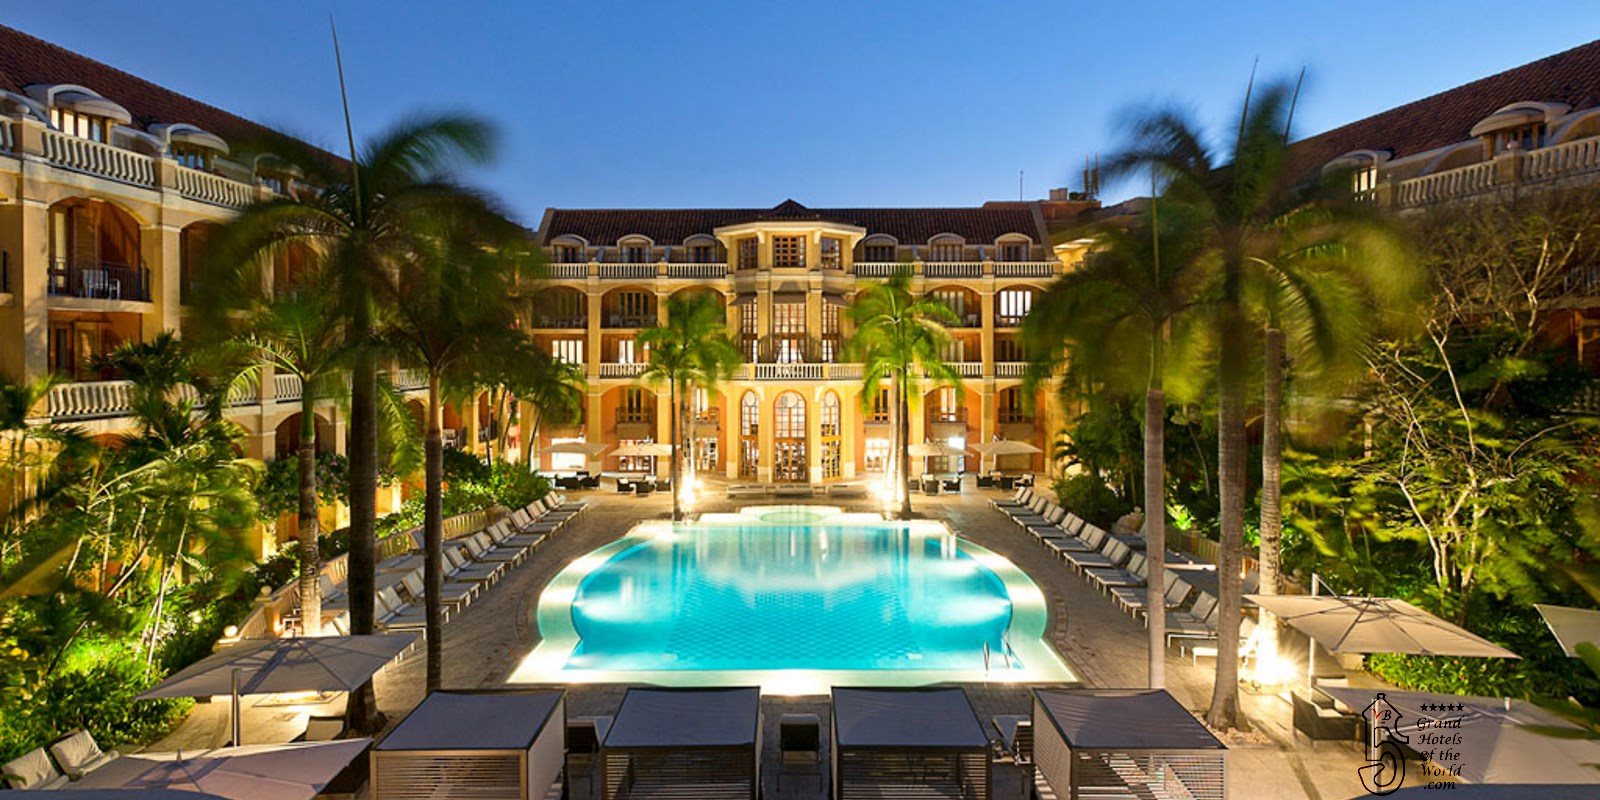 Hotel Santa Clara in Cartagena de Indias